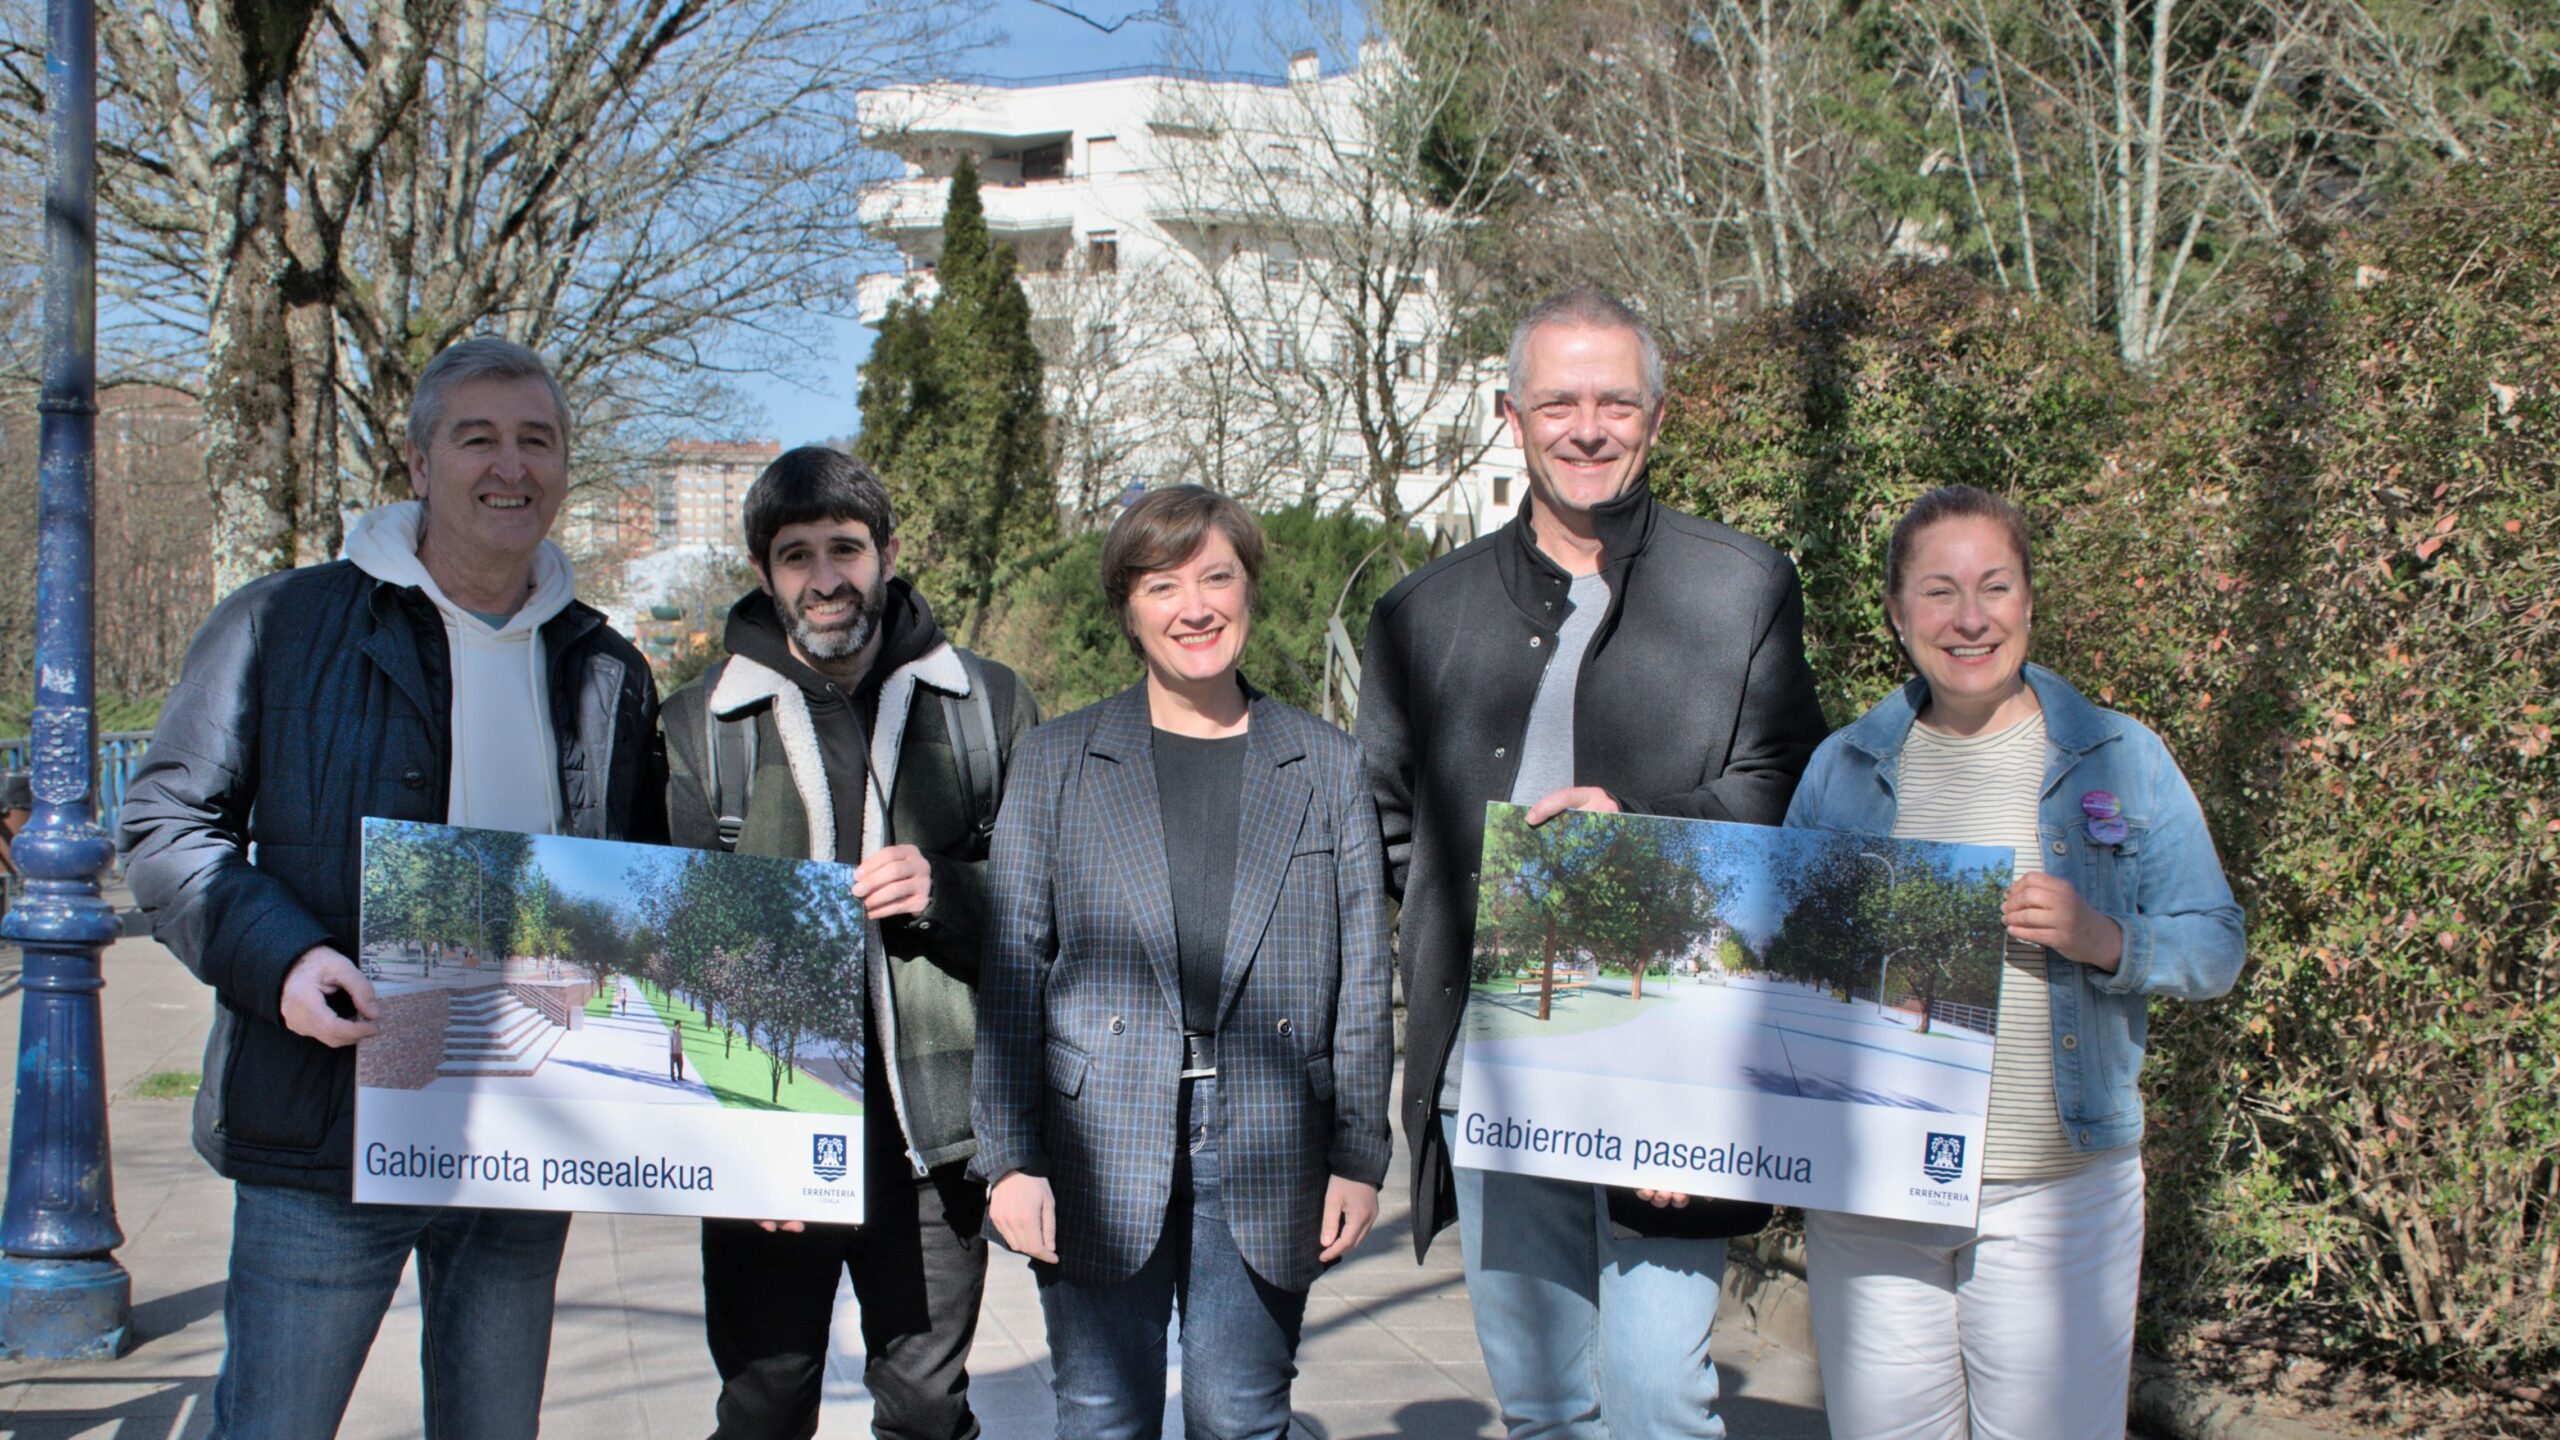 El Ayuntamiento de Errenteria presenta la propuesta para mejorar el paseo de Gabierrota